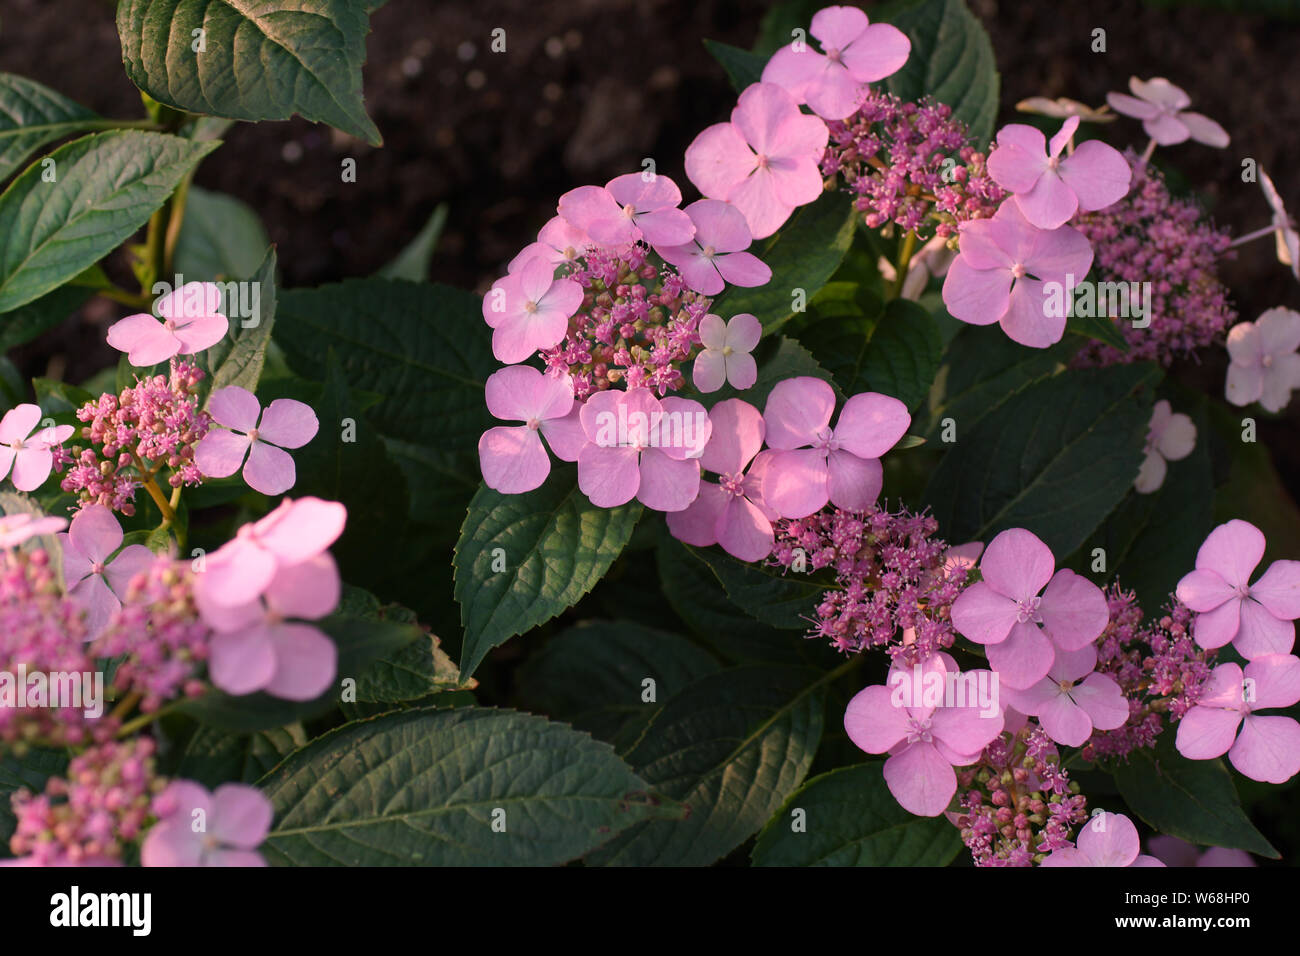 Hydrangea serrata Intermedia pink corymb. А Arten von blühenden Pflanze in der Familie Hydrangeaceae, beheimatet in Korea und Japan. Stockfoto